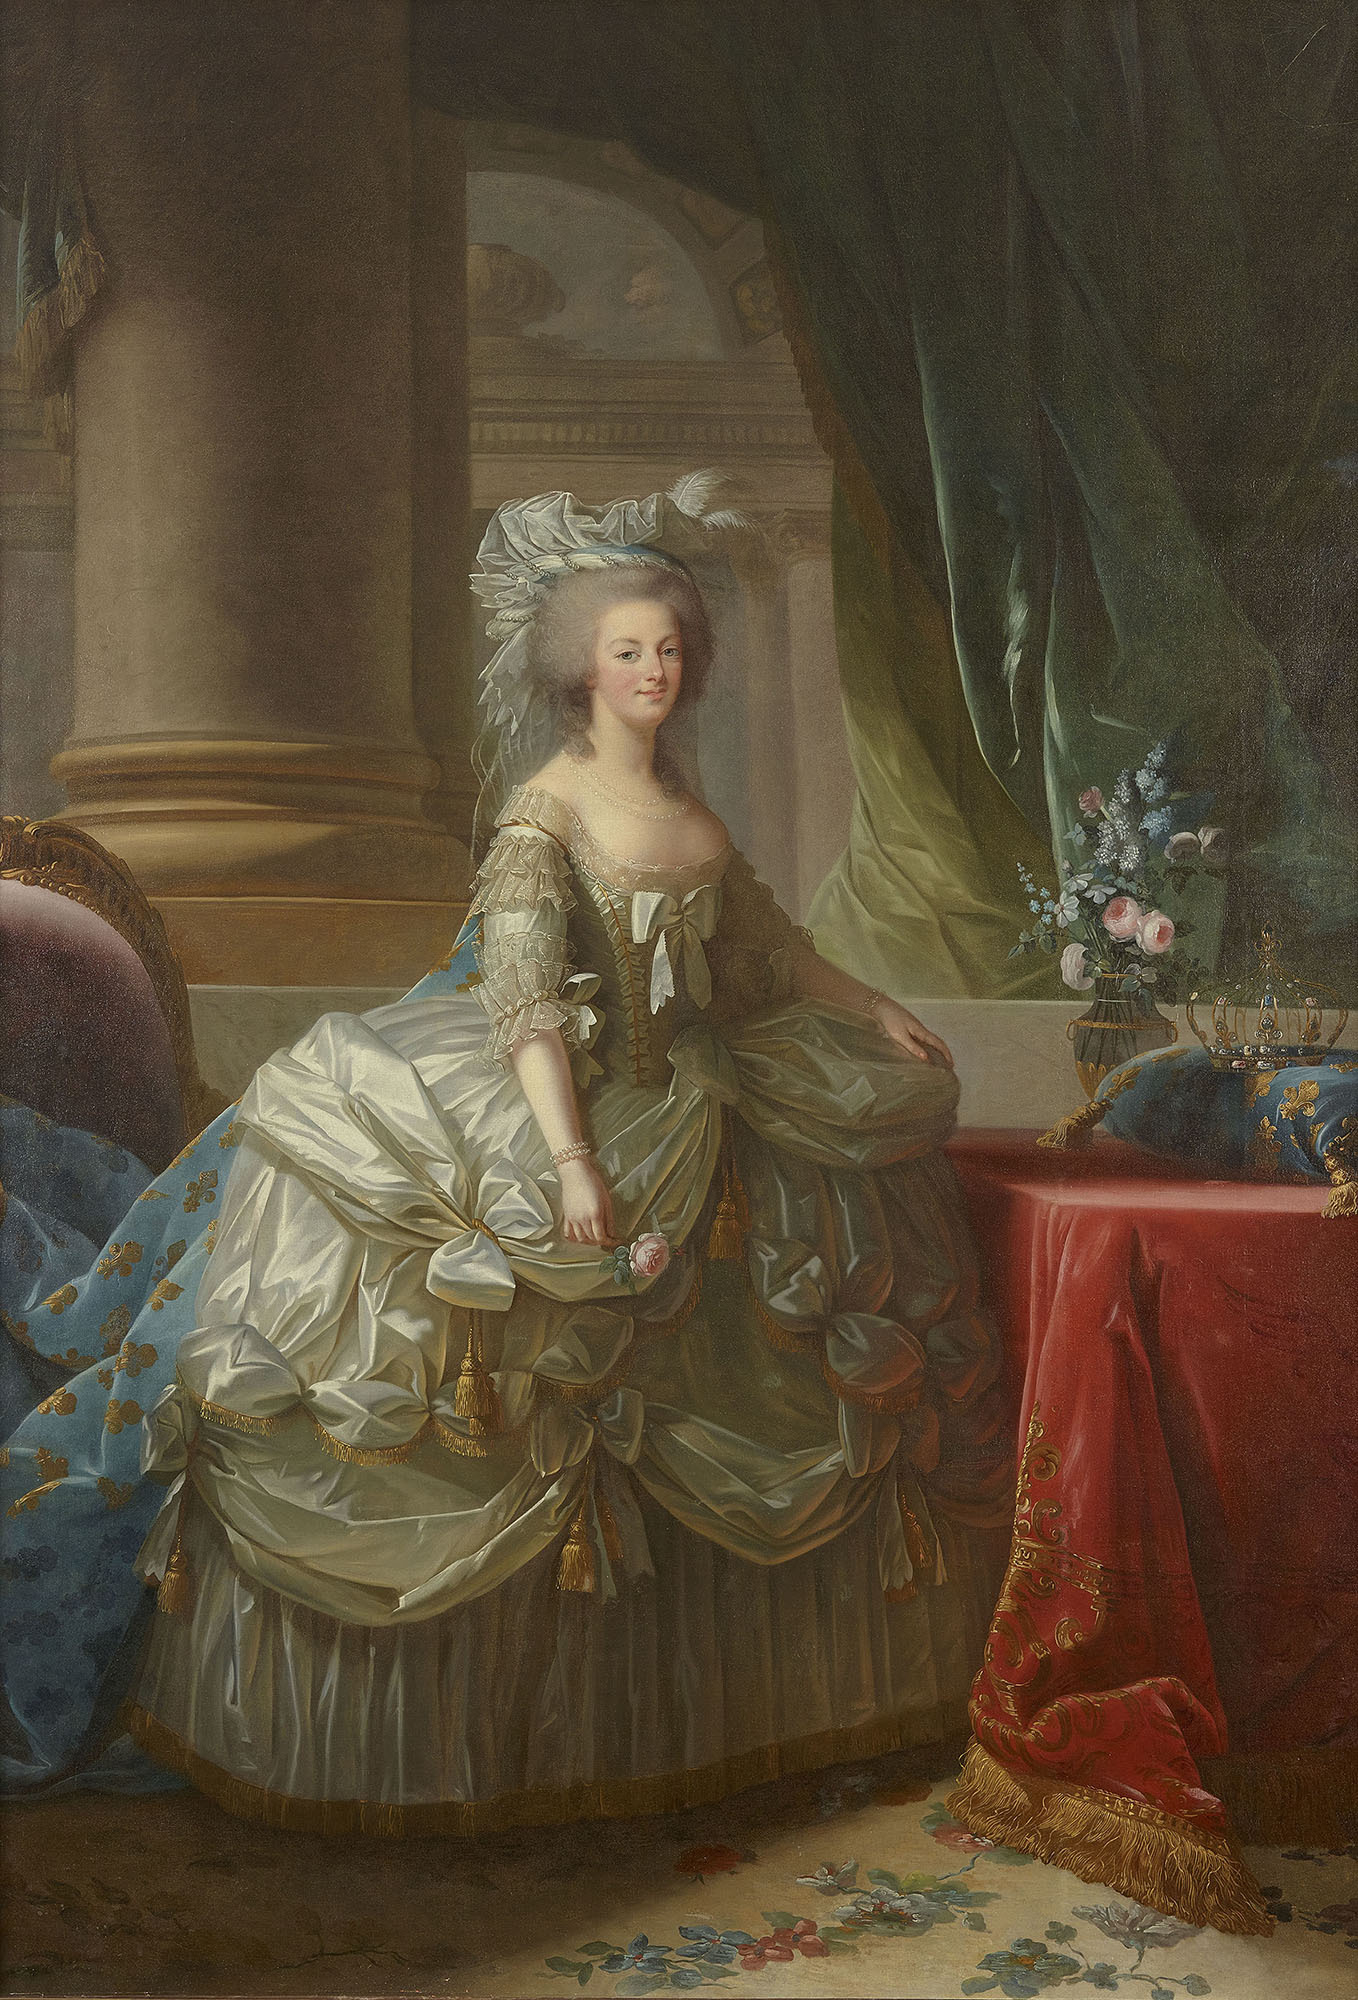 エリザベト=ルイーズ・ヴィジェ・ル・ブラン 《フランス王妃 マリー・アントワネット》 1785年 ヴェルサイユ宮殿美術館